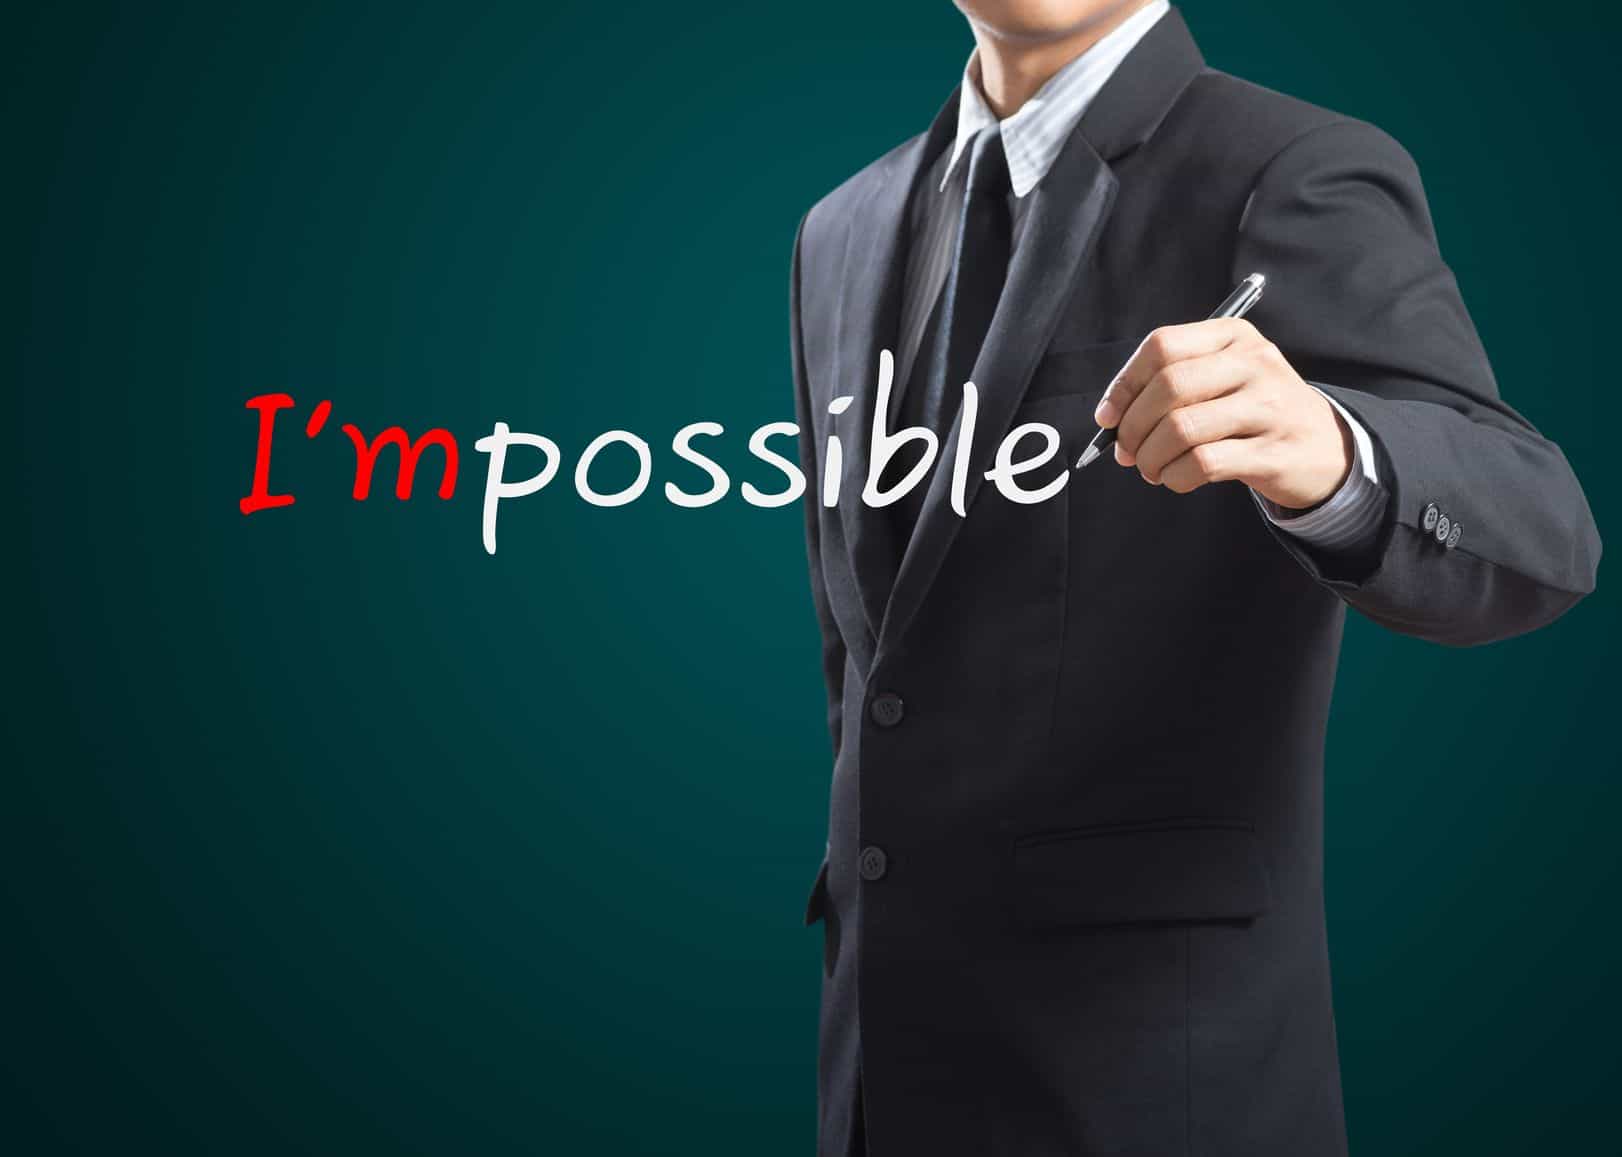 איך להפוך את הבלתי אפשרי לאפשרי. להתגבר על נסיבות כדי להצליח בעסק או בקריירה